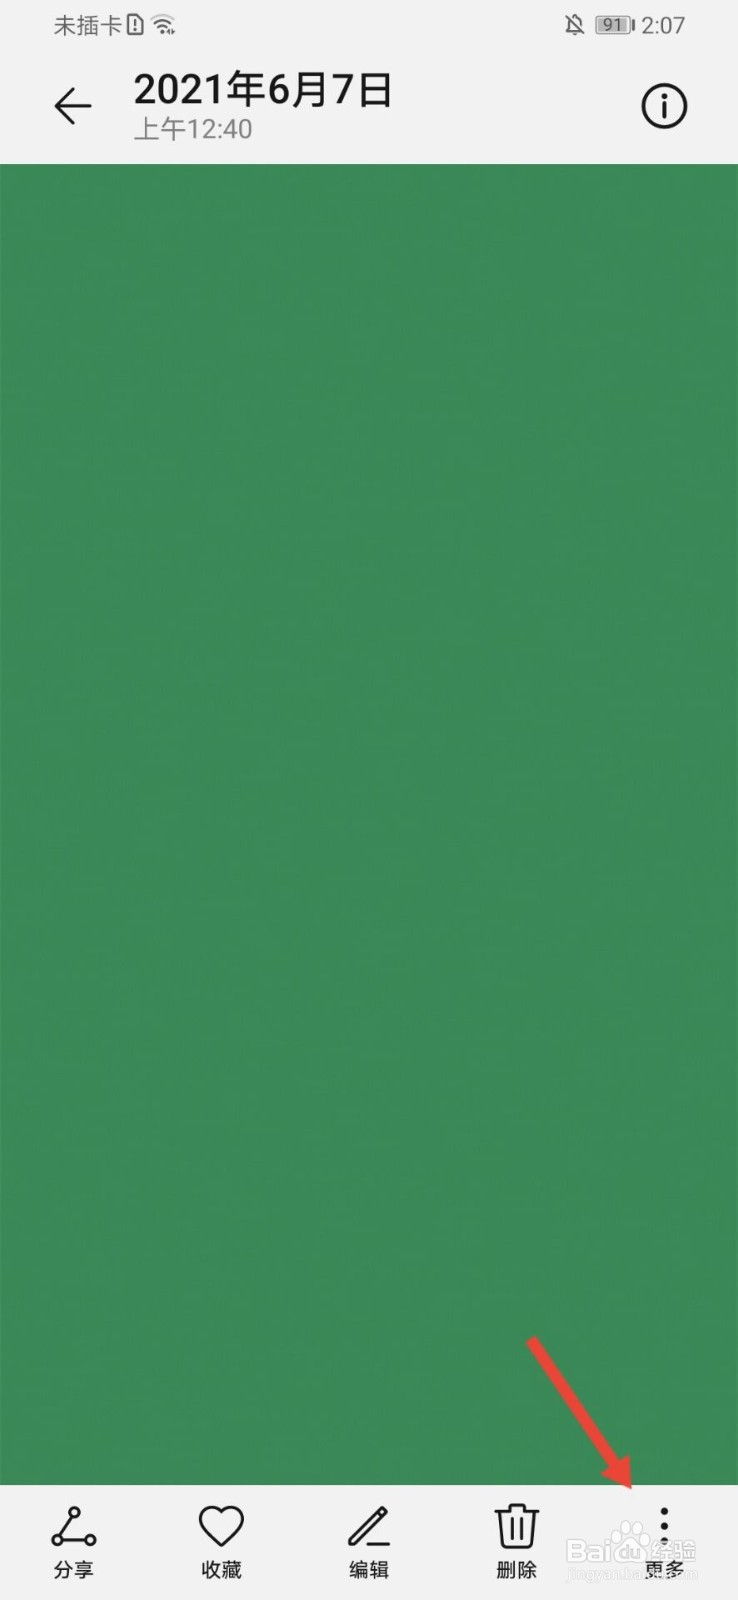 纯绿色壁纸纯色屏保图片